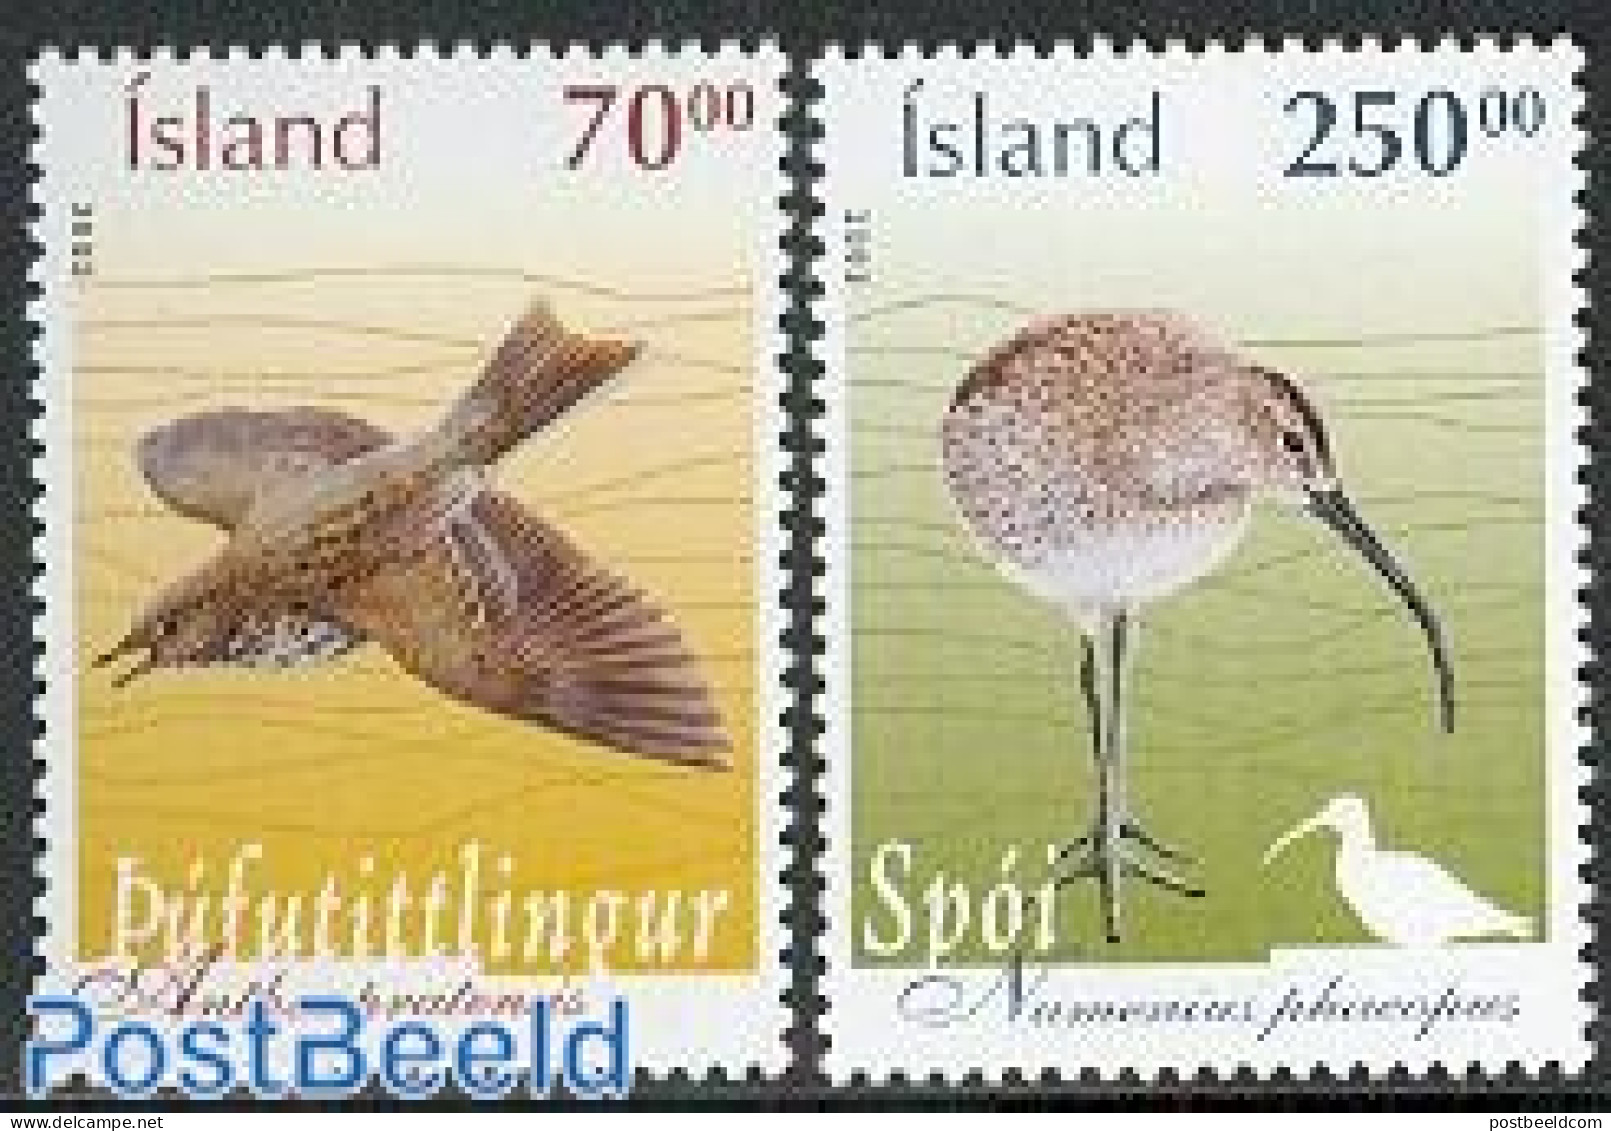 Iceland 2003 Birds 2v, Mint NH, Nature - Birds - Ungebraucht